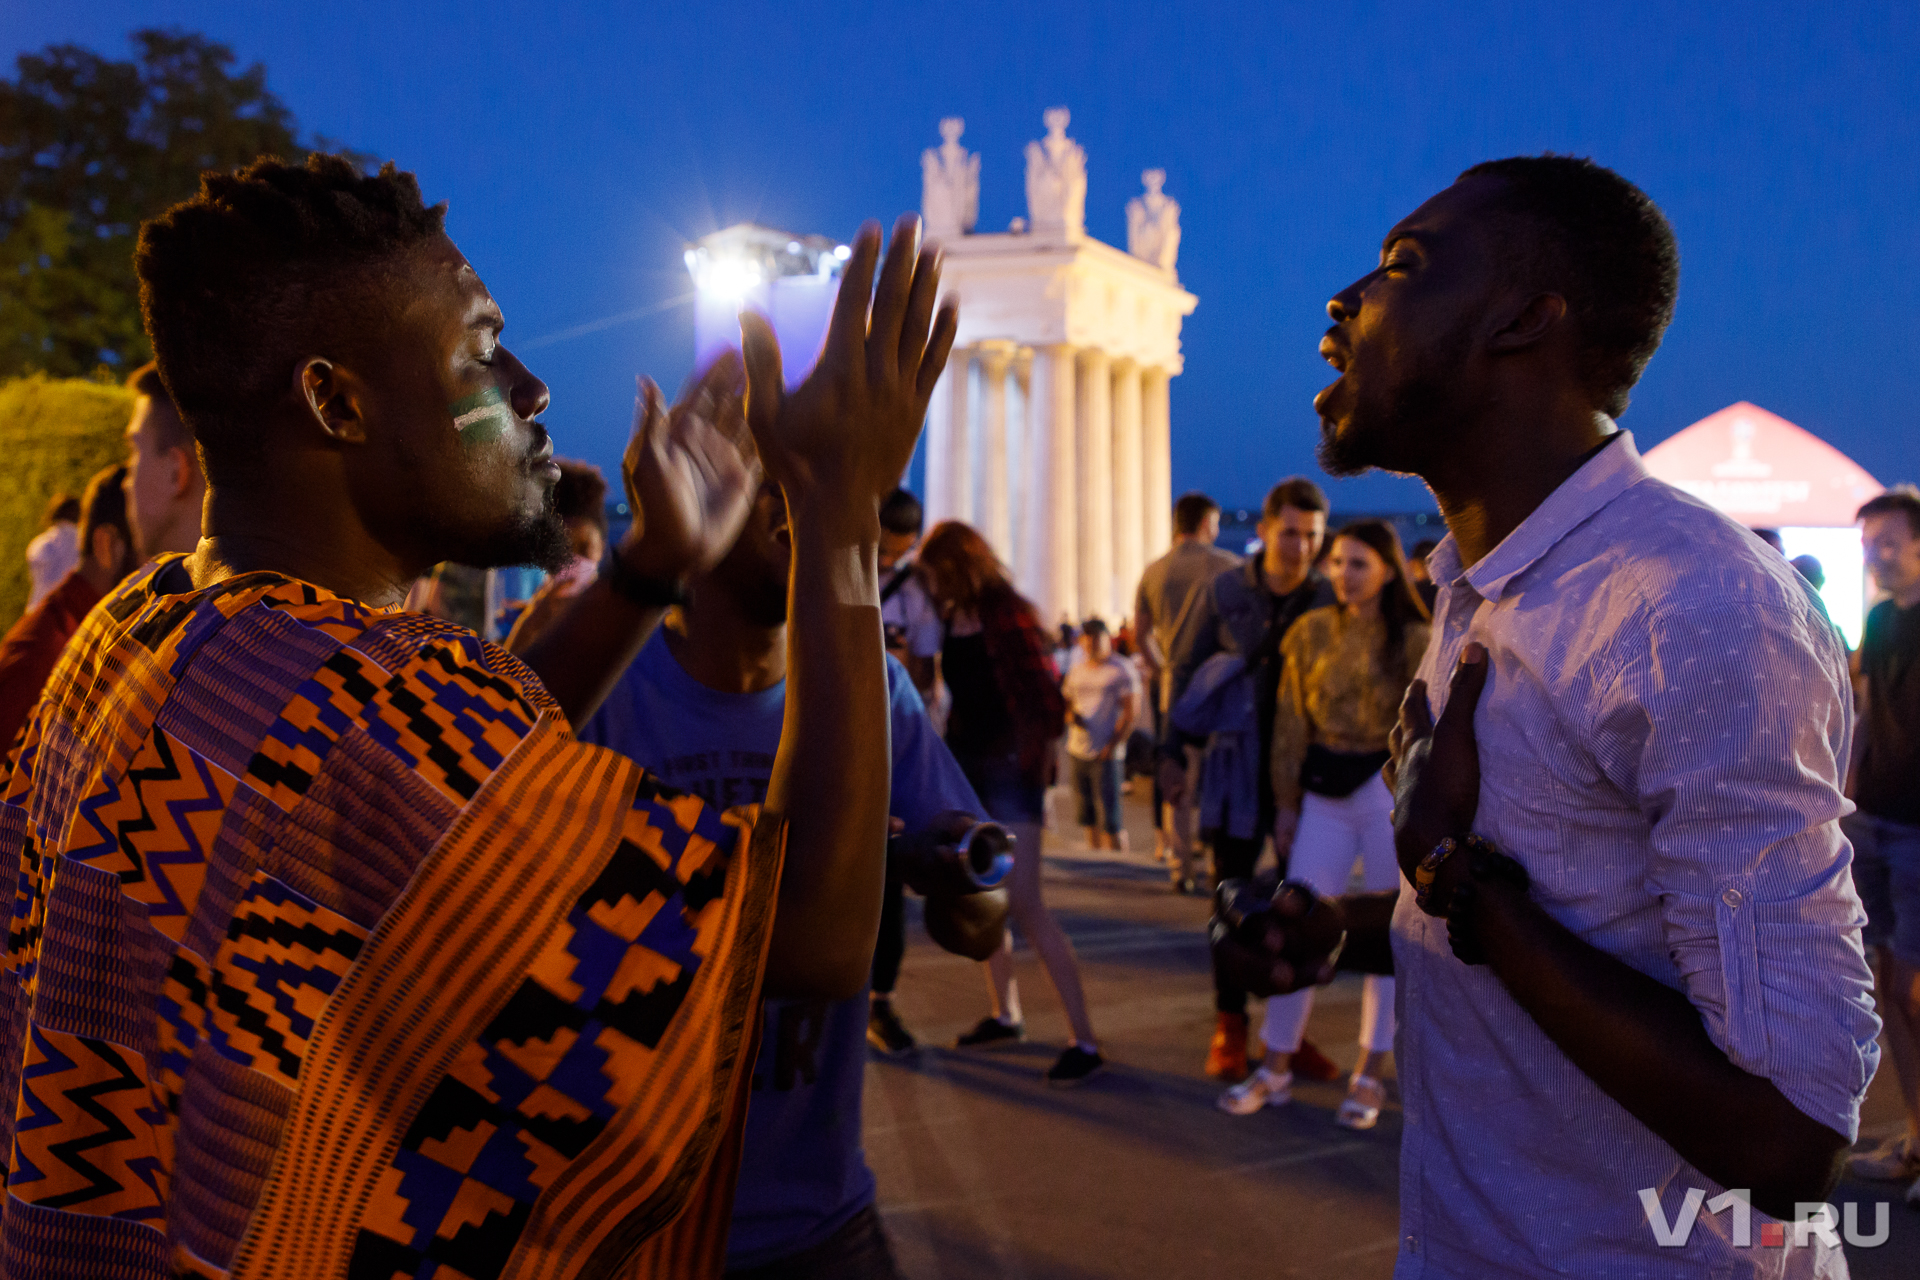 Африканские болельщики показали в фан-зоне Волгограда ритуальные танцы